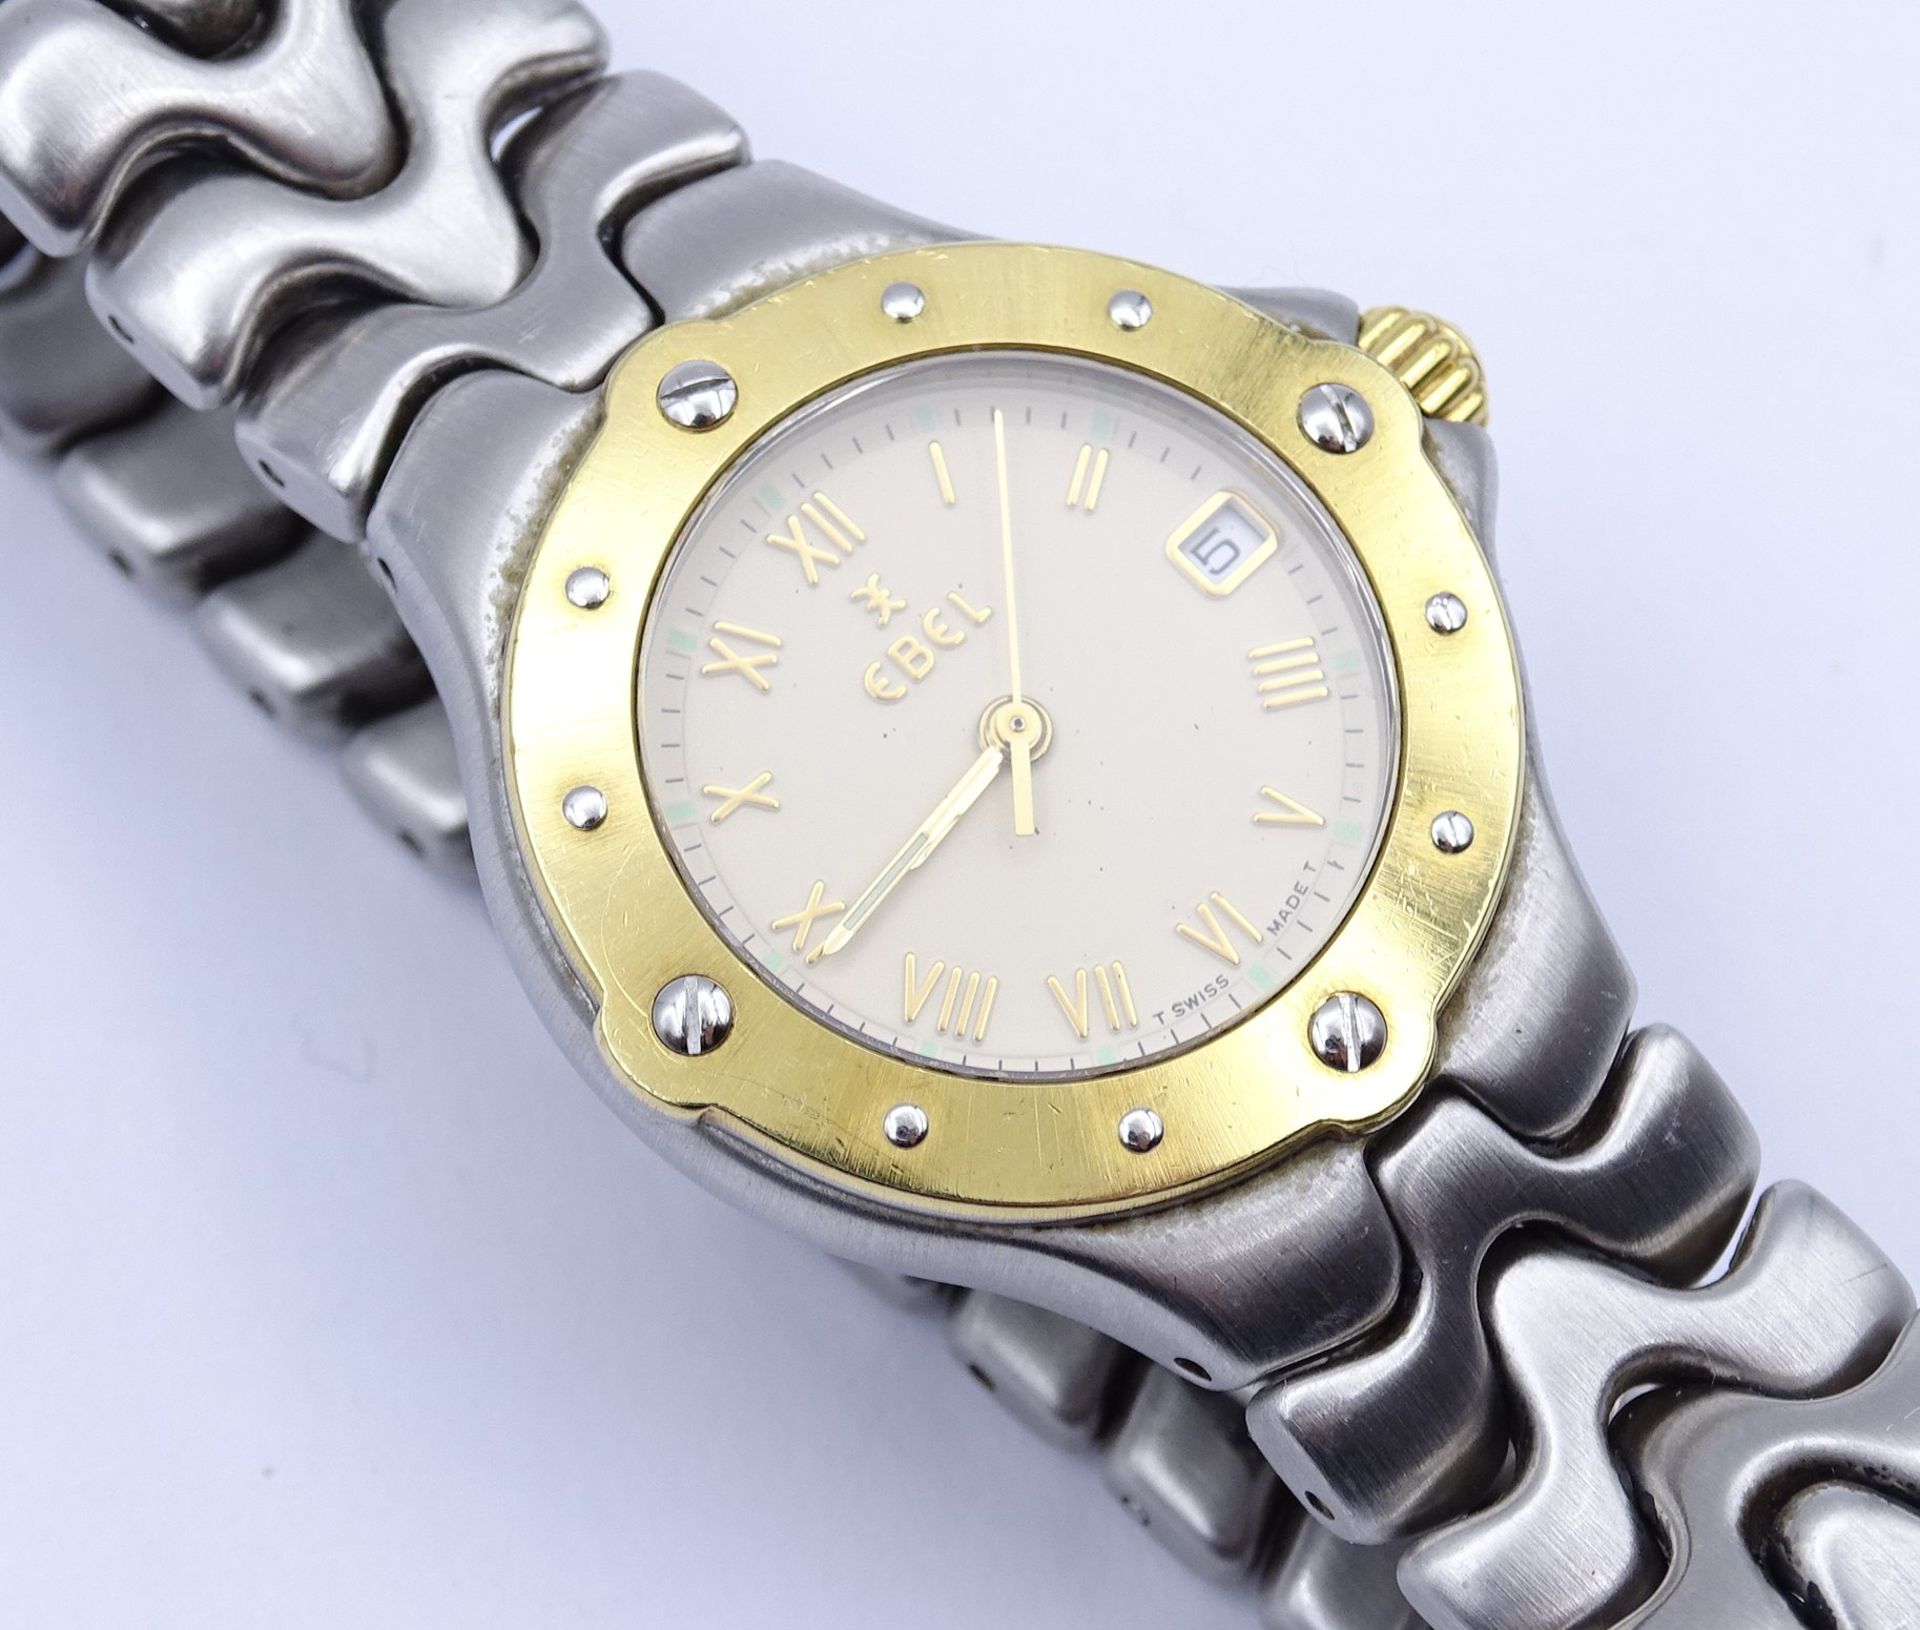 Damen Armbanduhr EBEL SPORTWAVE , Stahl / Gelbgold, Quartz, D. 26mm, Funktion nicht überprüft - Image 4 of 5